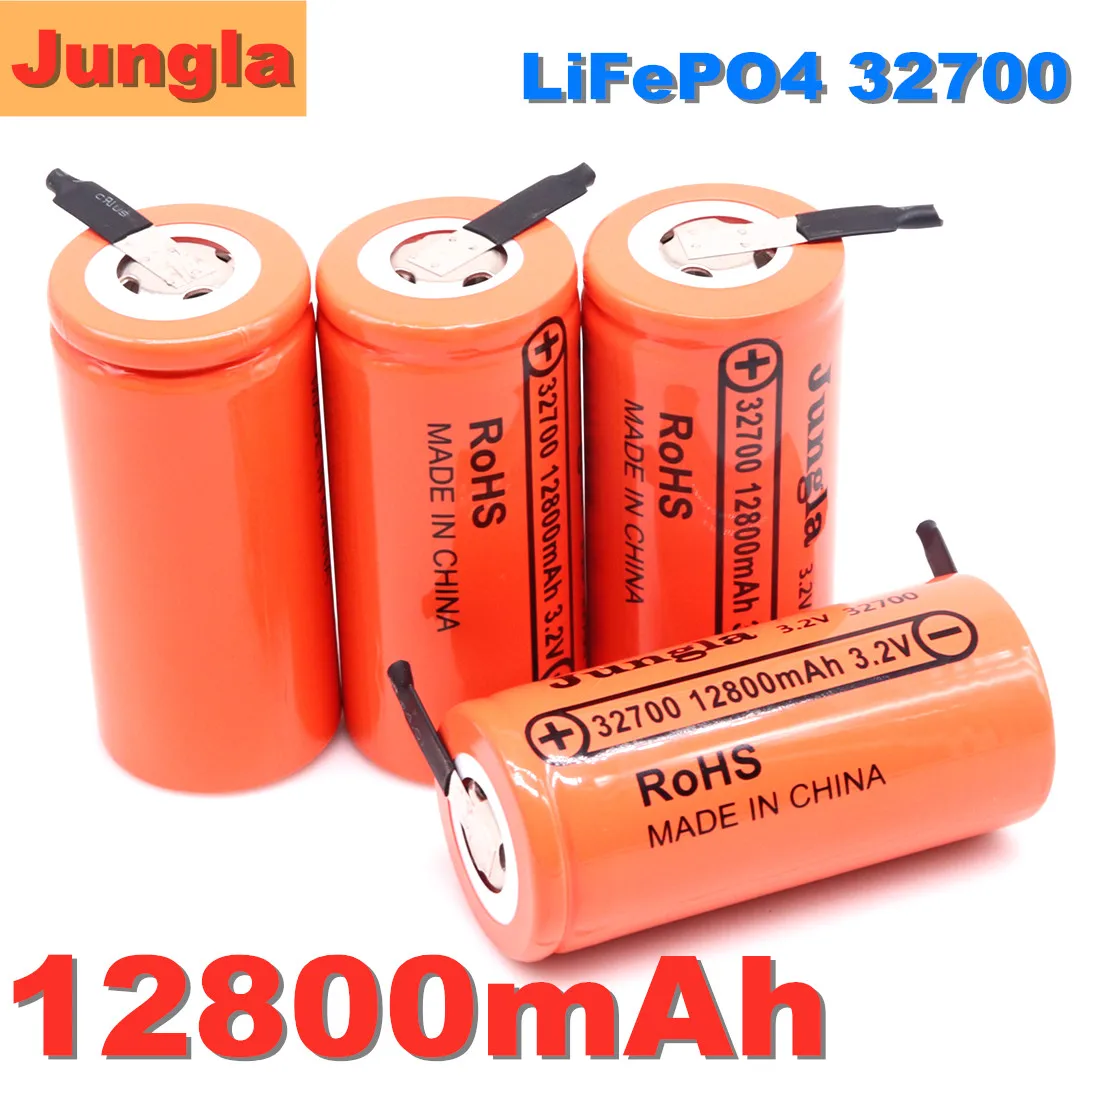 

Аккумулятор LiFePO4 высокой емкости 2023 в, 3,2, 32700 мАч, 12800 Ач, 50 А, максимальная мощность разряда батареи высокой мощности + никелевые пластины